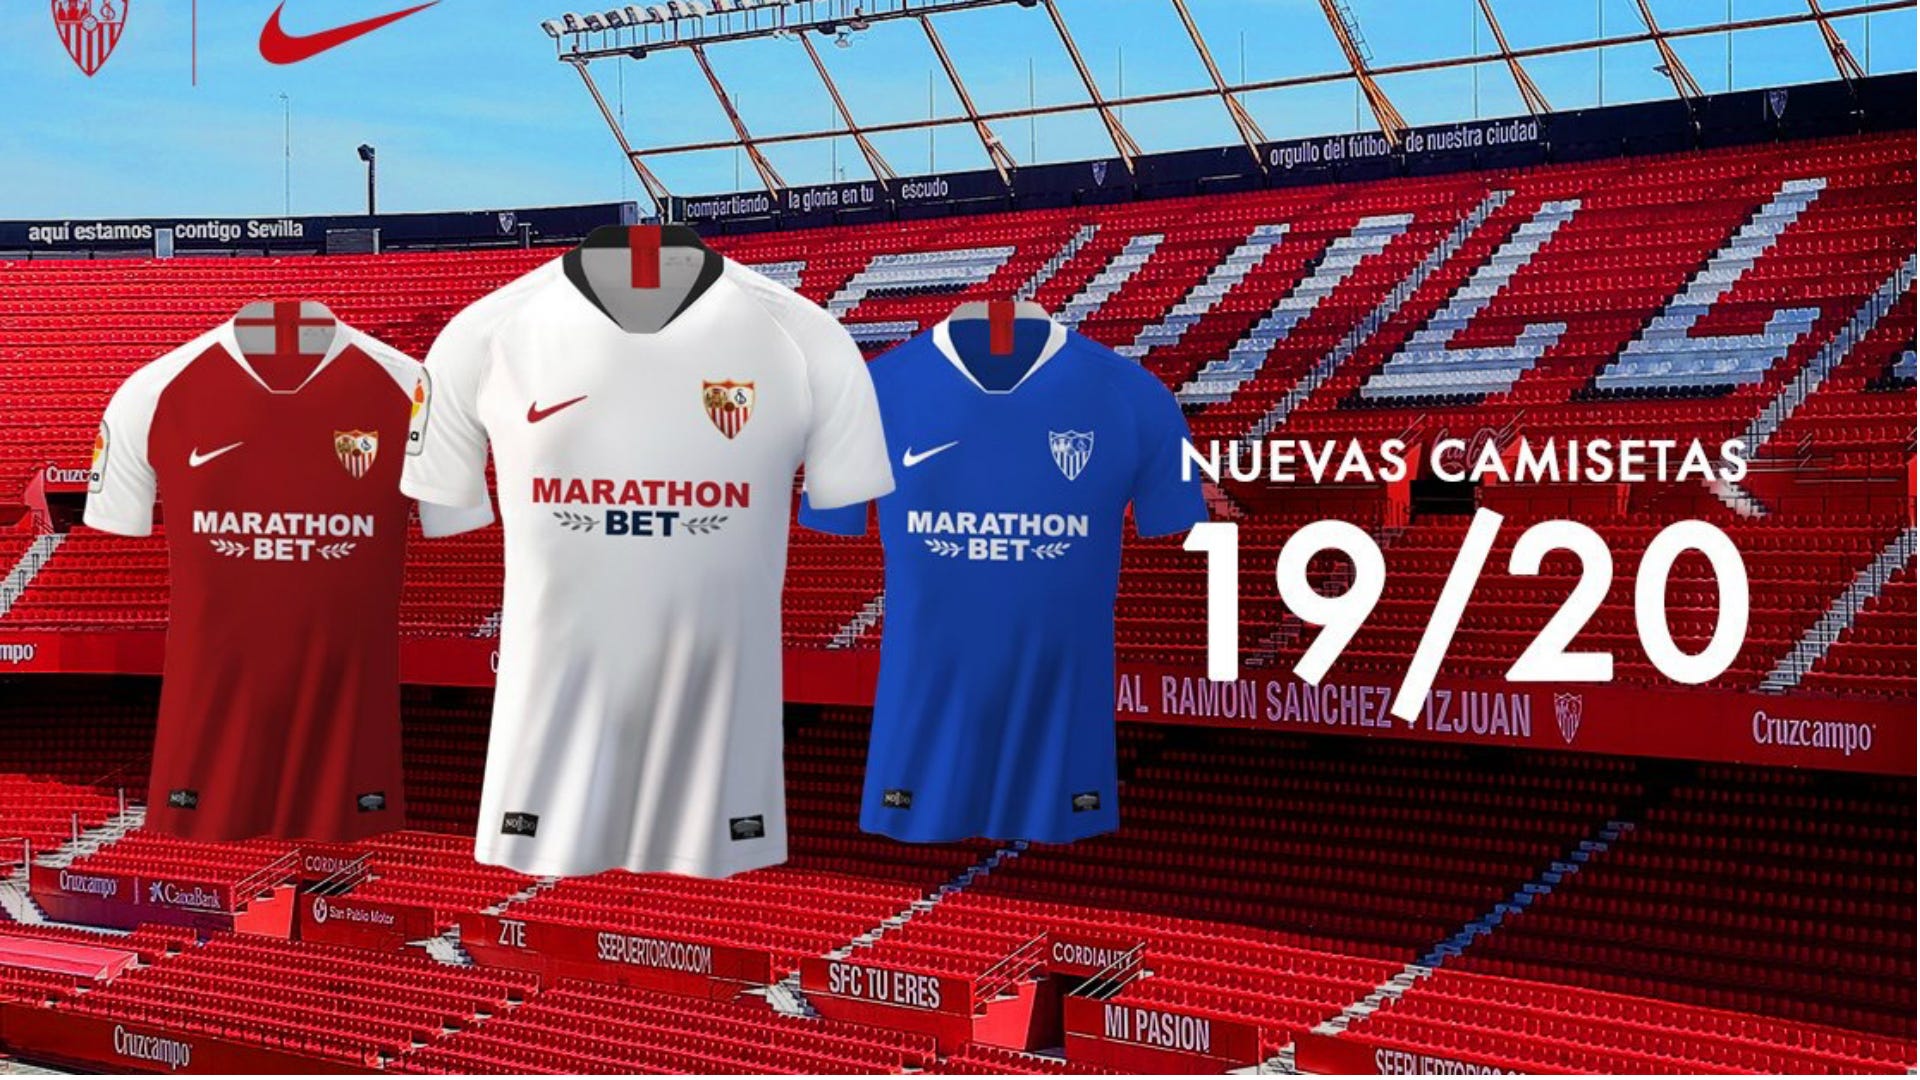 El Sevilla sus nuevas camisetas Nike para la temporada 2019-2020 con como nuevo patrocinador | Espana